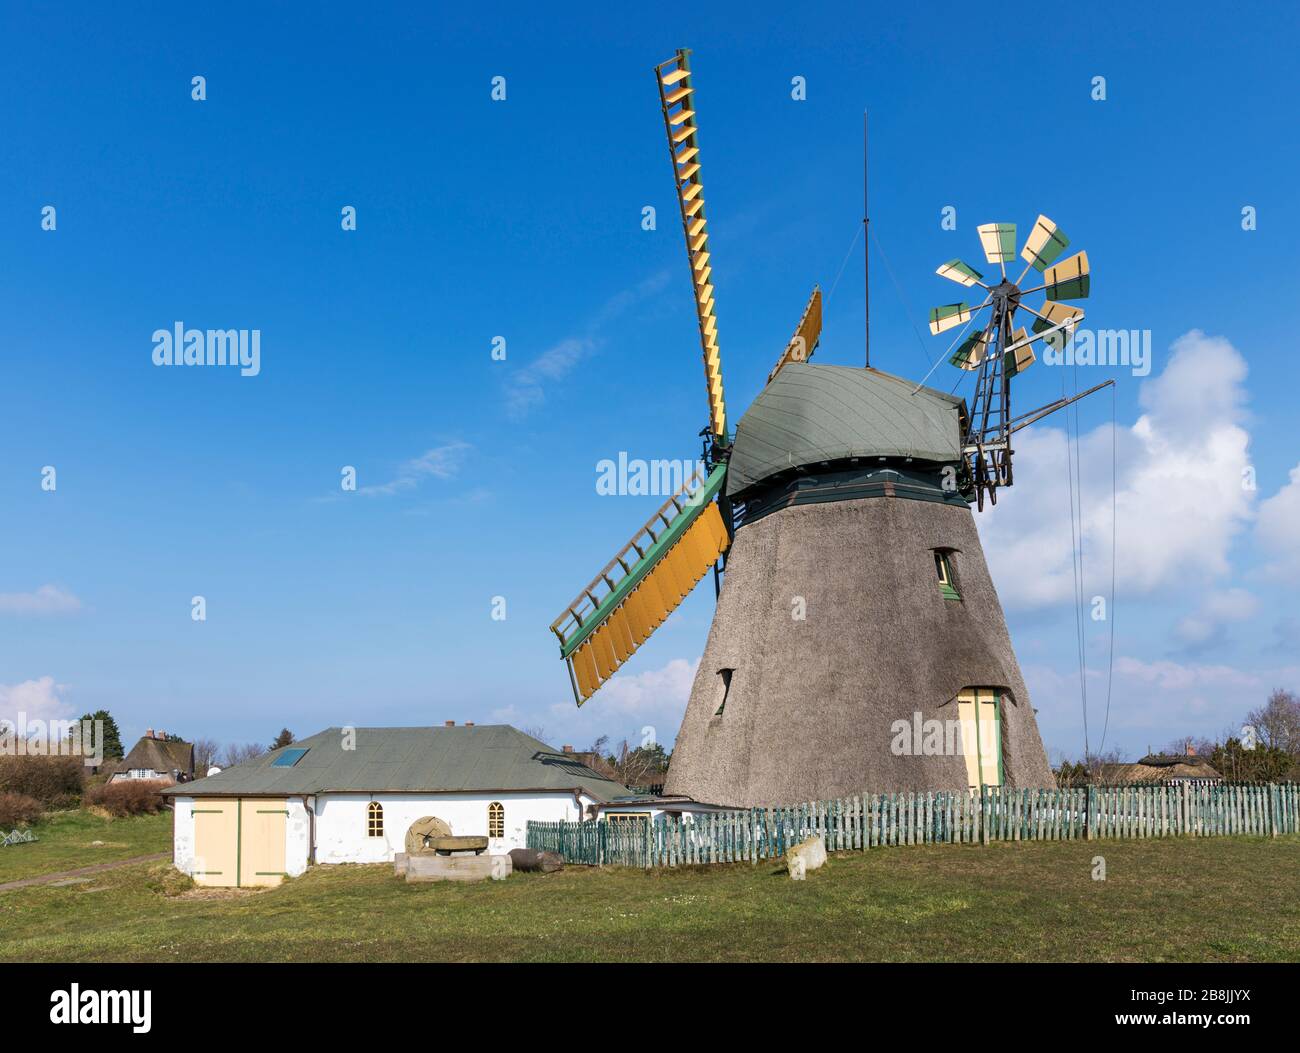 Storico mulino a vento e museo costruito nel villaggio di Nebel sul Mare del Nord tedesco isola di Amrum Foto Stock